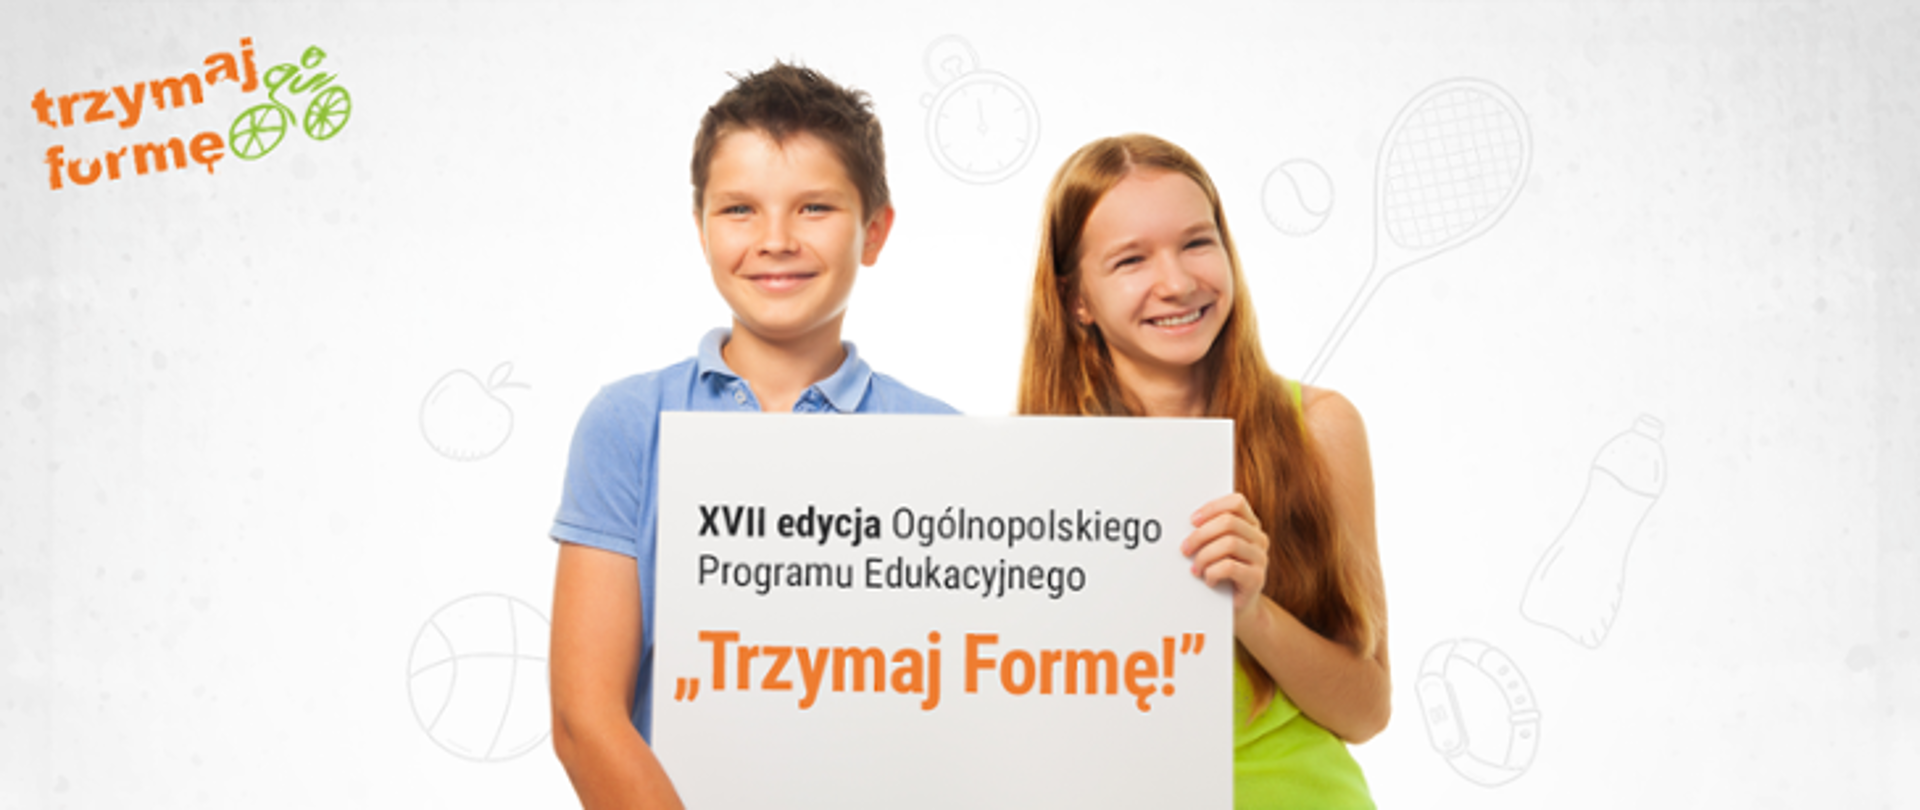 Uśmiechnięta dziewczynka z chłopcem wspólnie trzymający baner z napisem: XVII edycja Ogólnopolskiego Programu Edukacyjnego ,,Trzymaj Formę!"